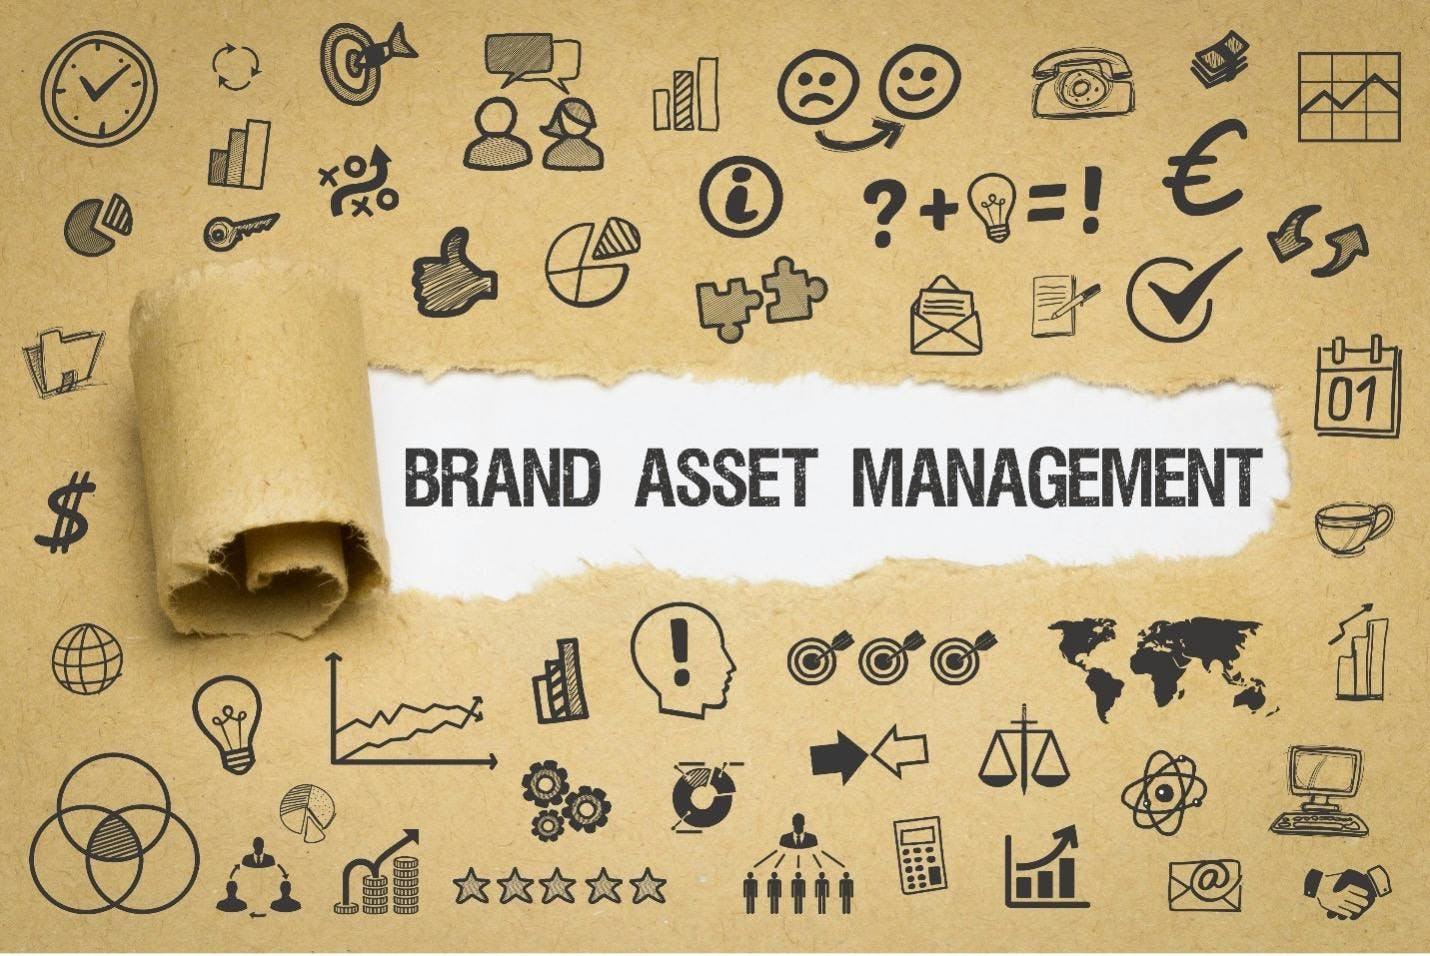 Een foto van een papier met heel veel verschillende icoontjes erop met centraal in het midden de woorden "brand asset management".